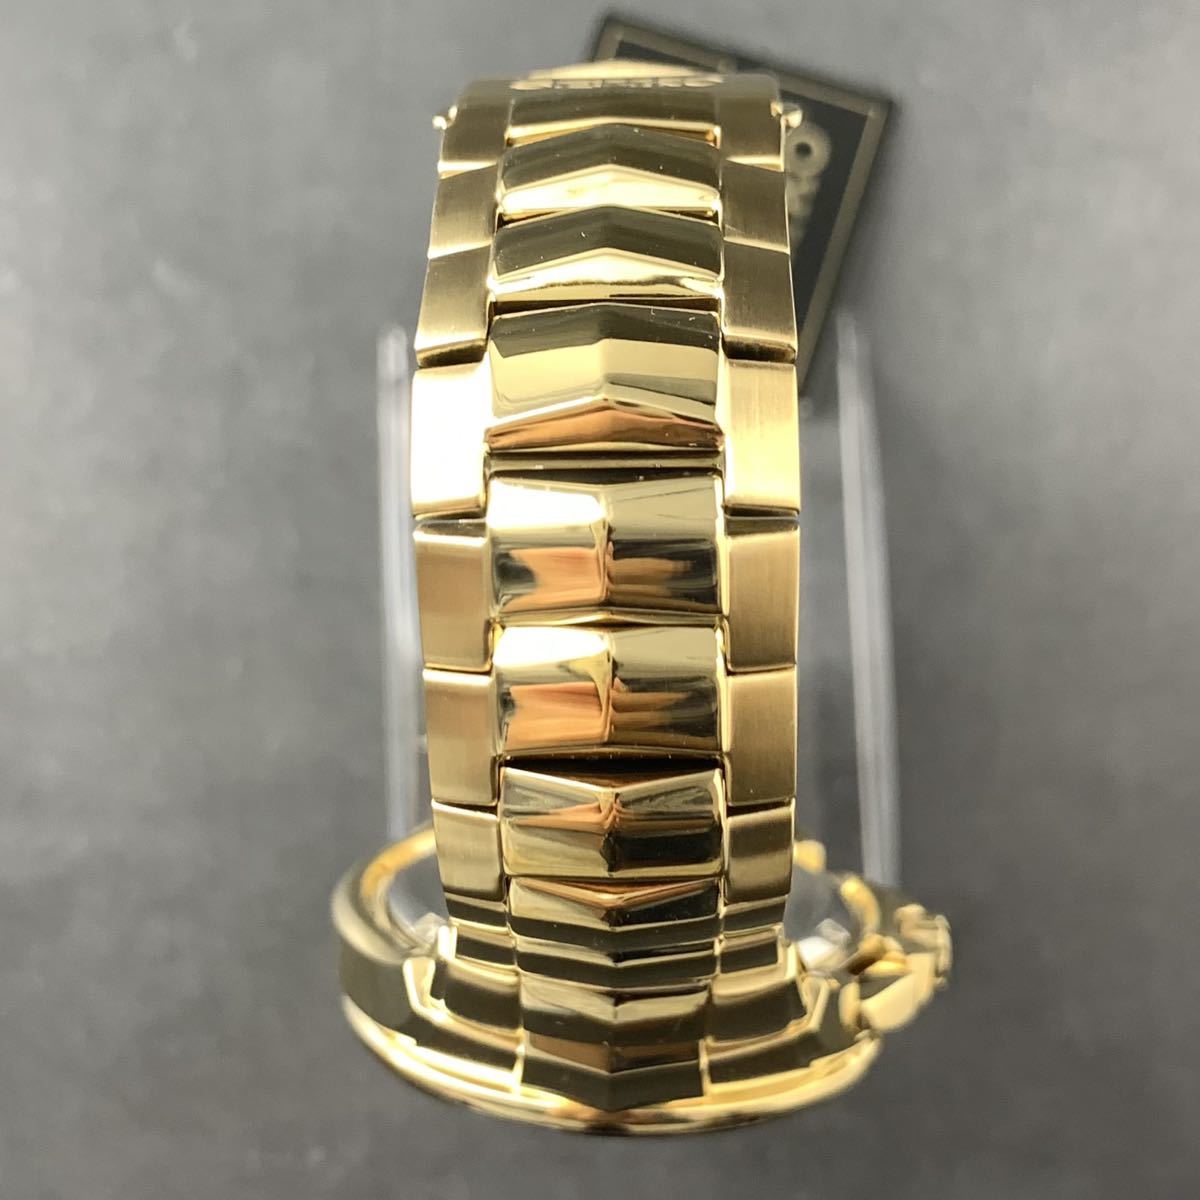 【新品訳あり】セイコー上級コーチュラ SSC700 パーペチュアル クロノグラフ ソーラー SEIKO メンズ腕時計 ゴールド_画像4